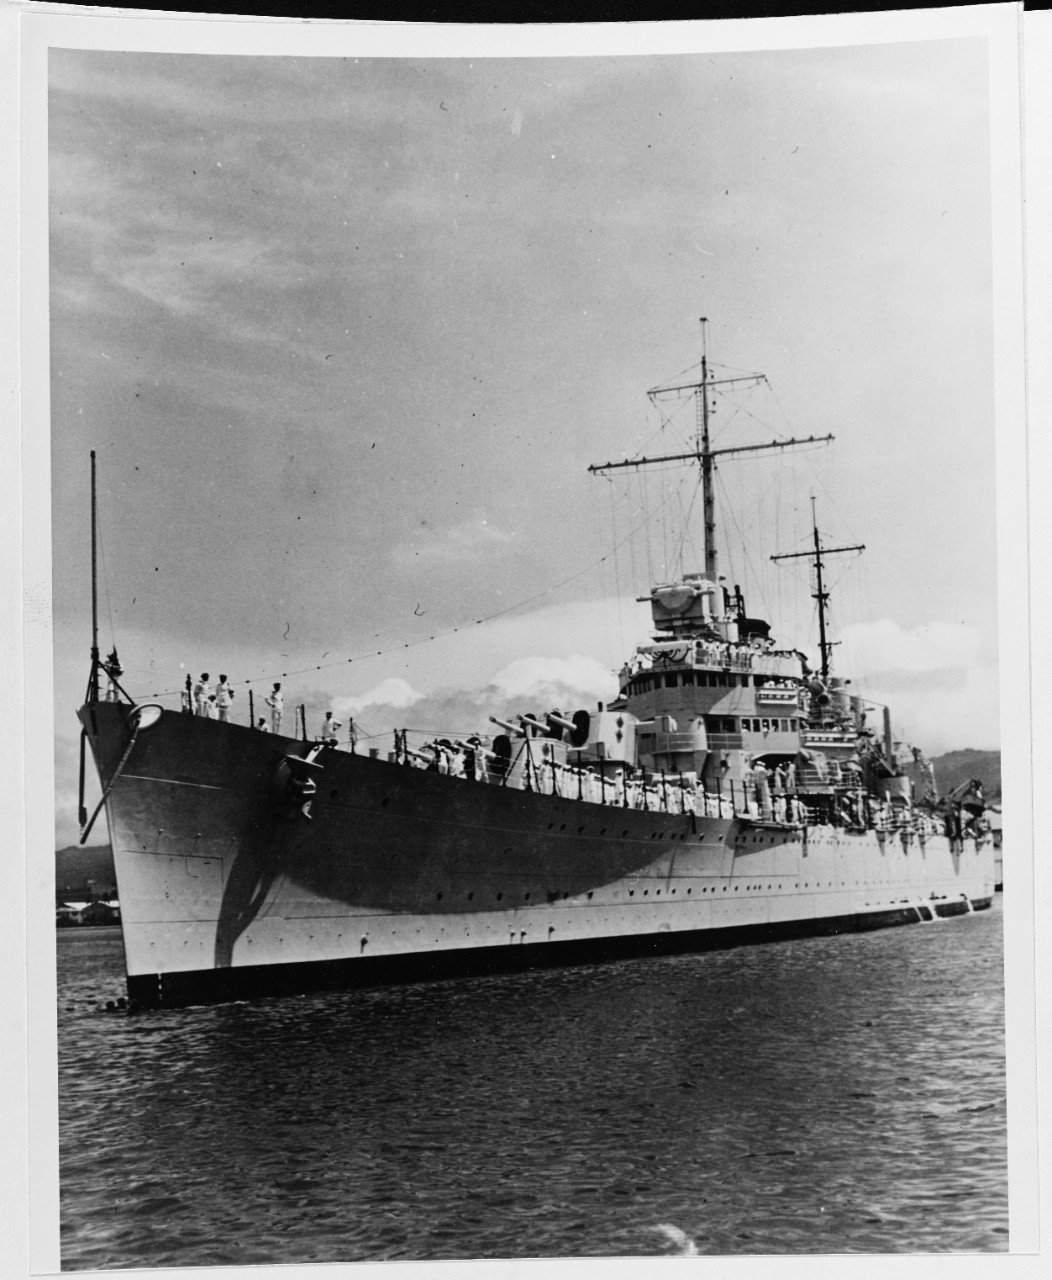 USS HONOLULU (CL-48)